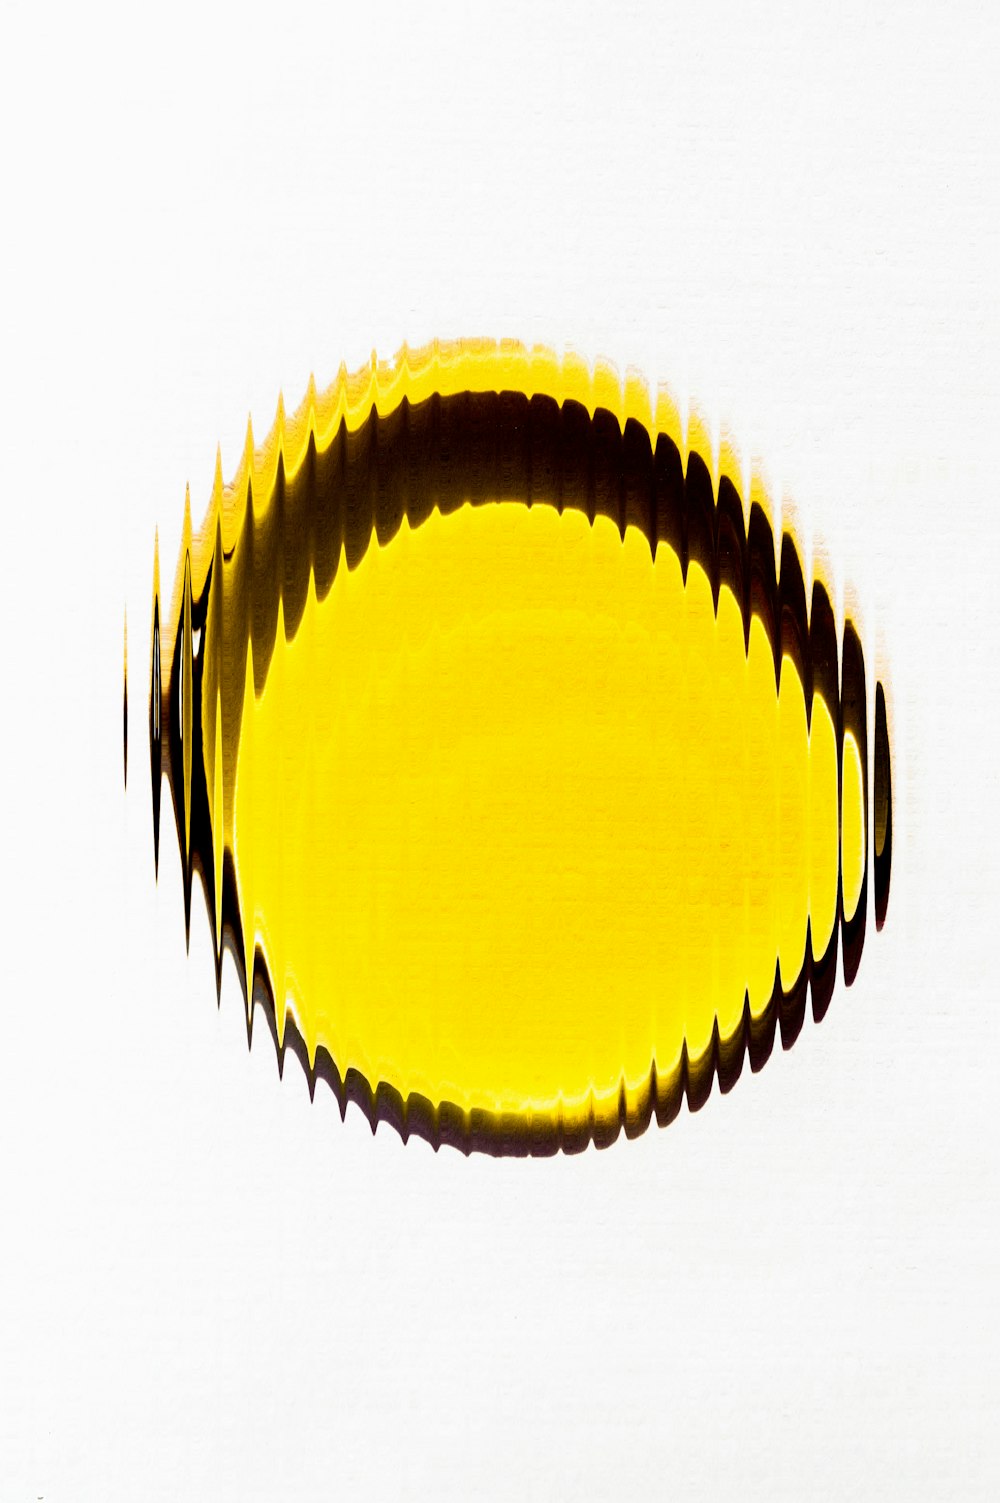 Nahaufnahme eines gelben Objekts auf weißer Oberfläche